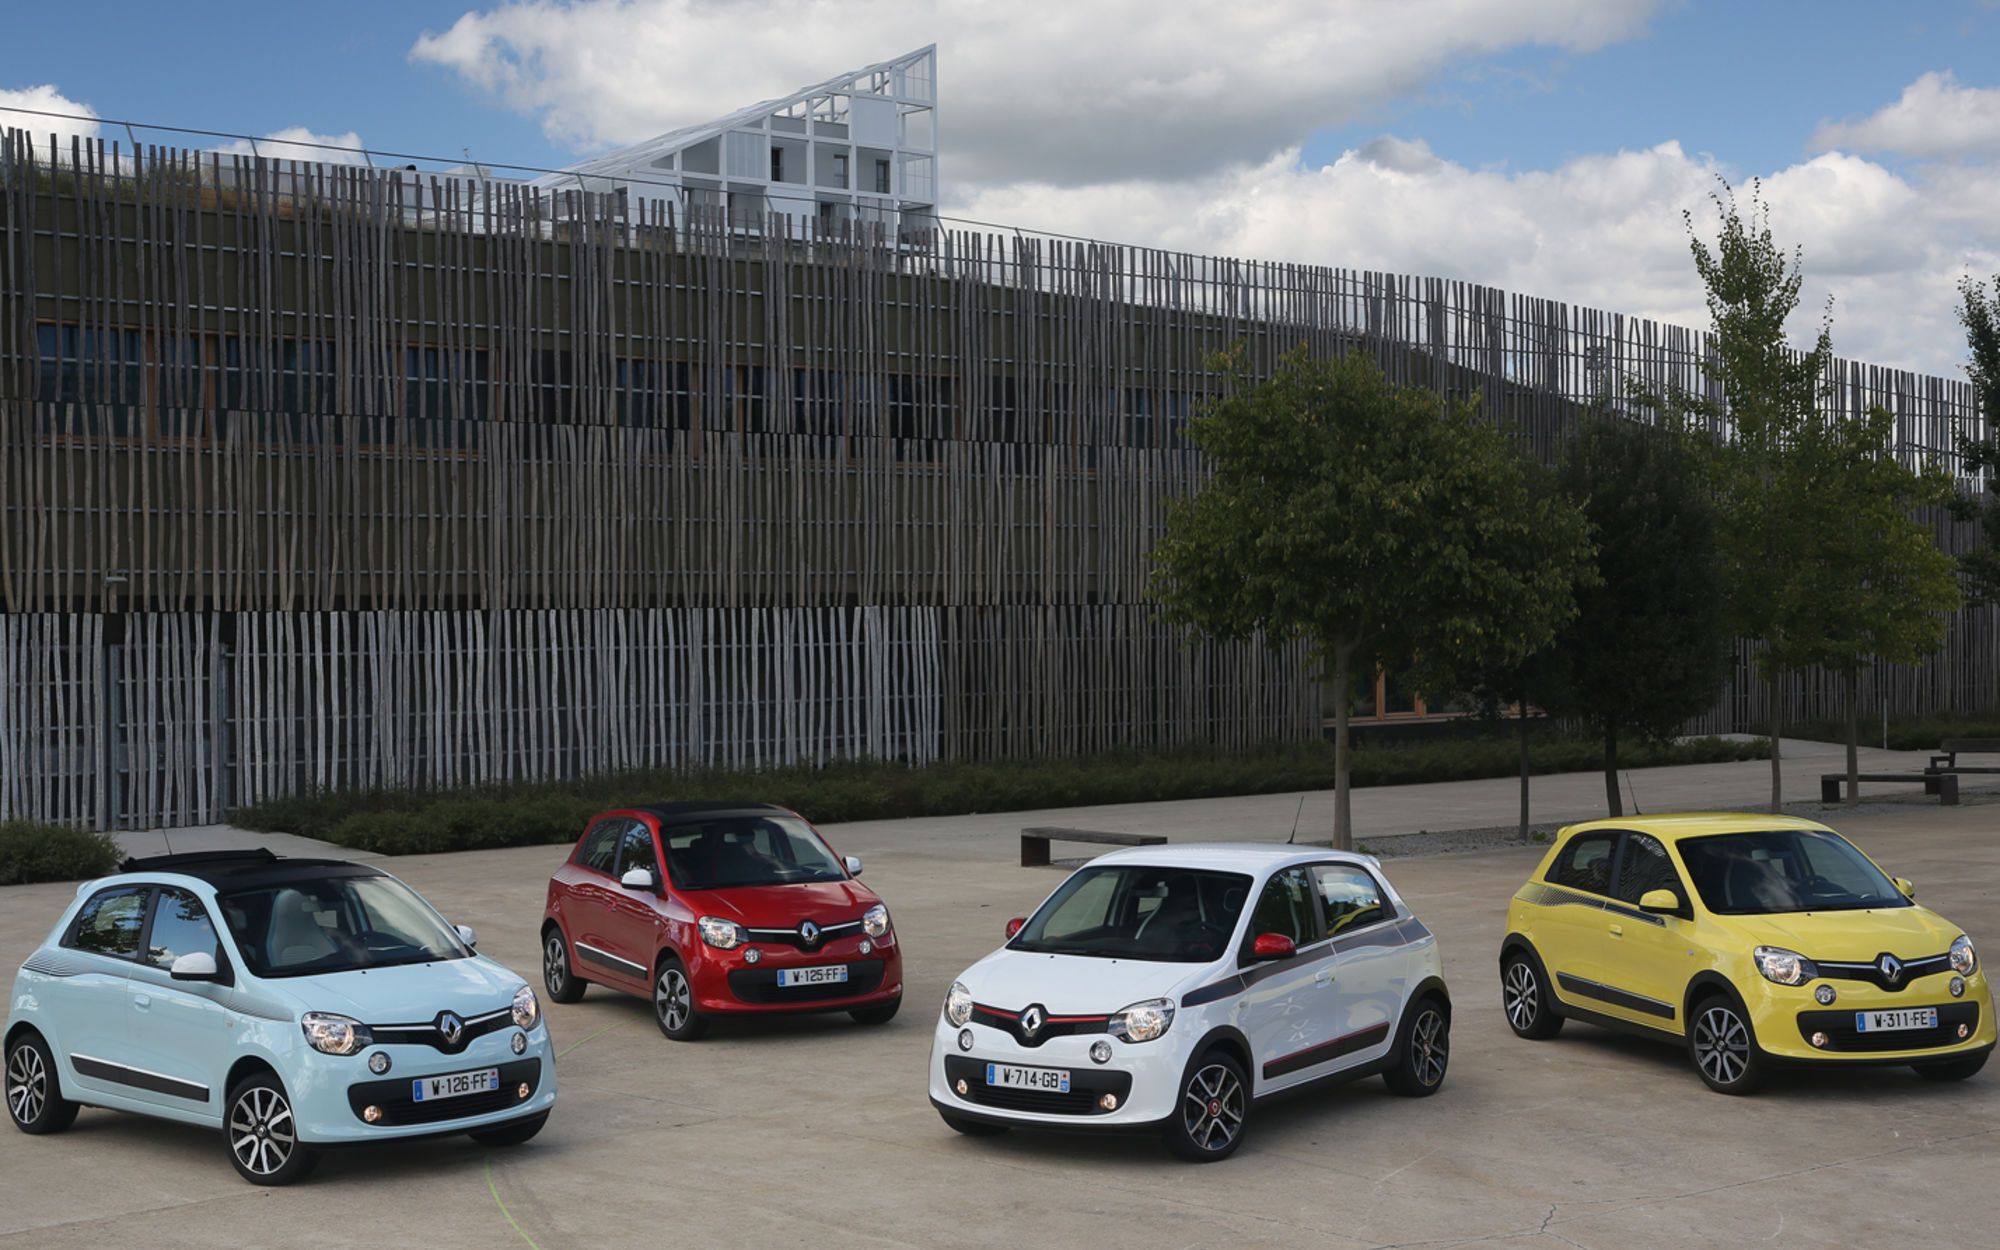 Nuova Renault Twingo: motore ribaltato e grandi spazi